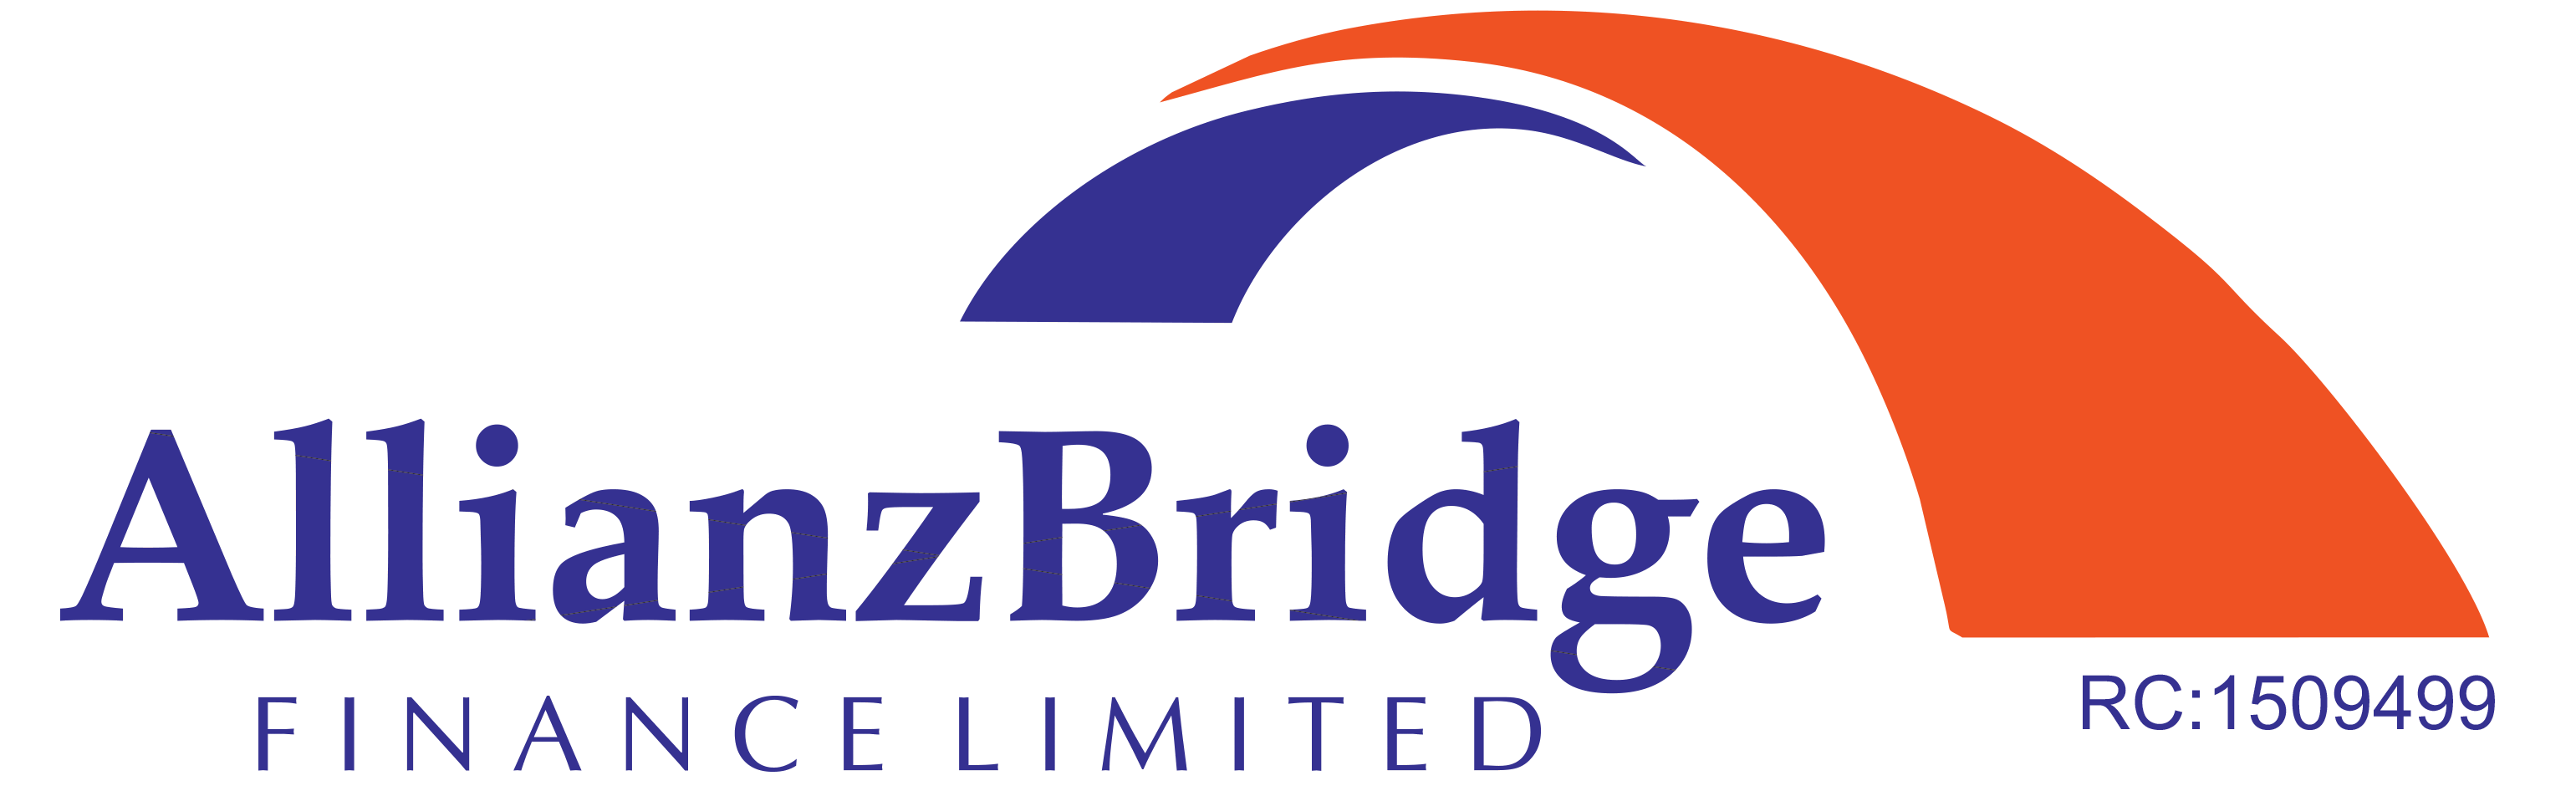 Alianzbridge logo